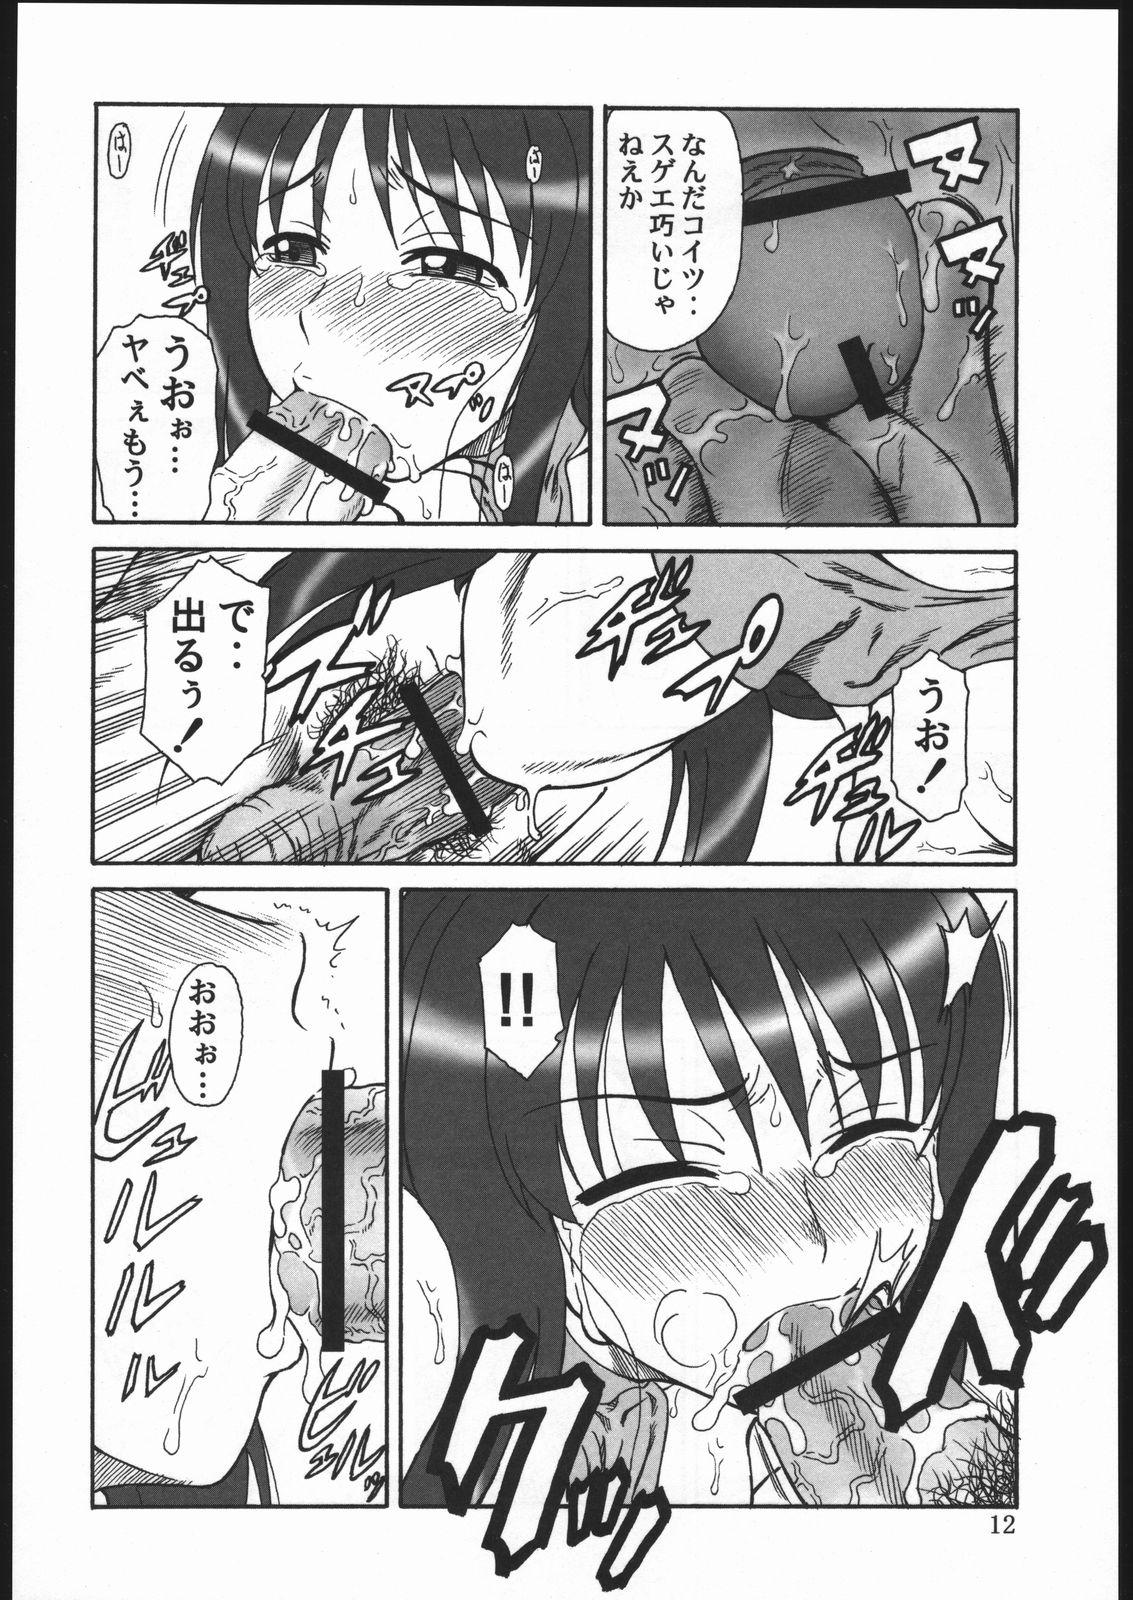 Fucked Gyokusai Kakugo 6 Kamikaze Attack!! - Kaleido star Domina - Page 11